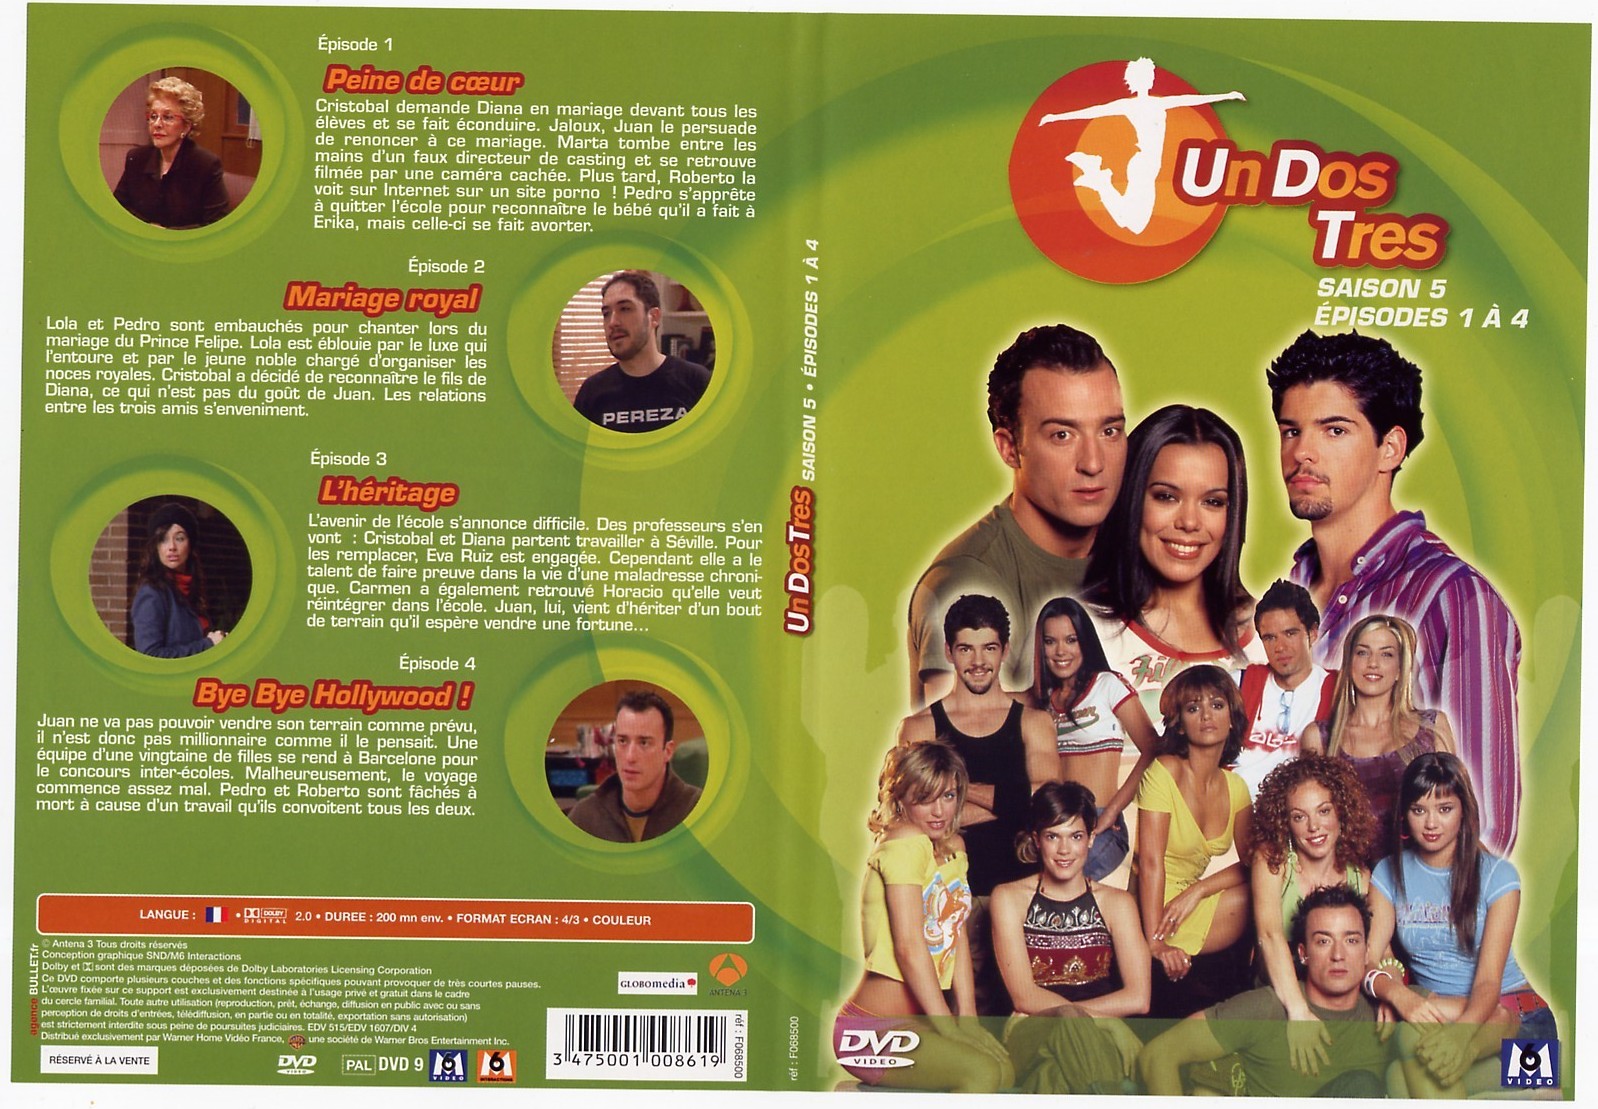 Jaquette DVD Un Dos Tres saison 5 Episodes 1  4